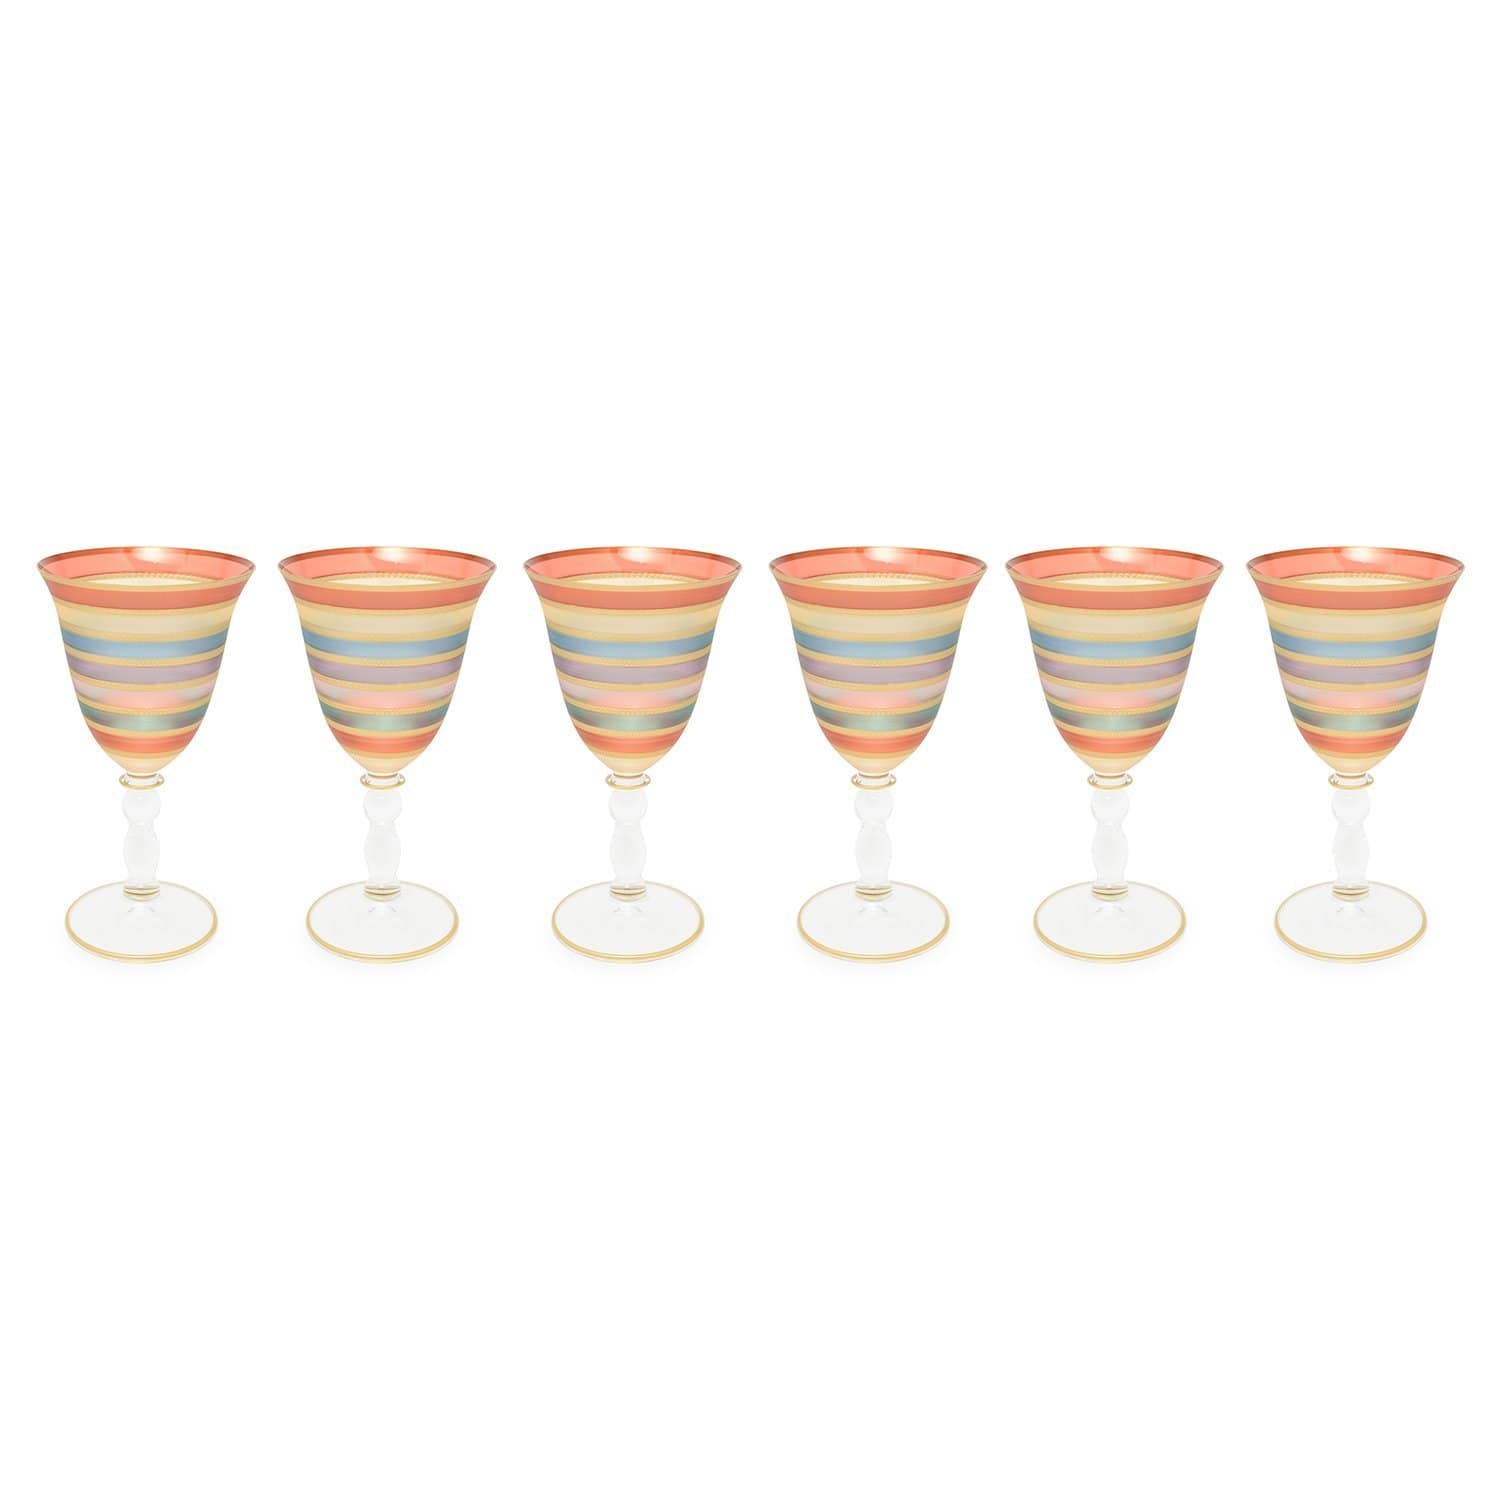 Combi Marisol Sat Large Goblet Set - Multicolour, 260 ml - G823Z-SAT/96 - Jashanmal Home